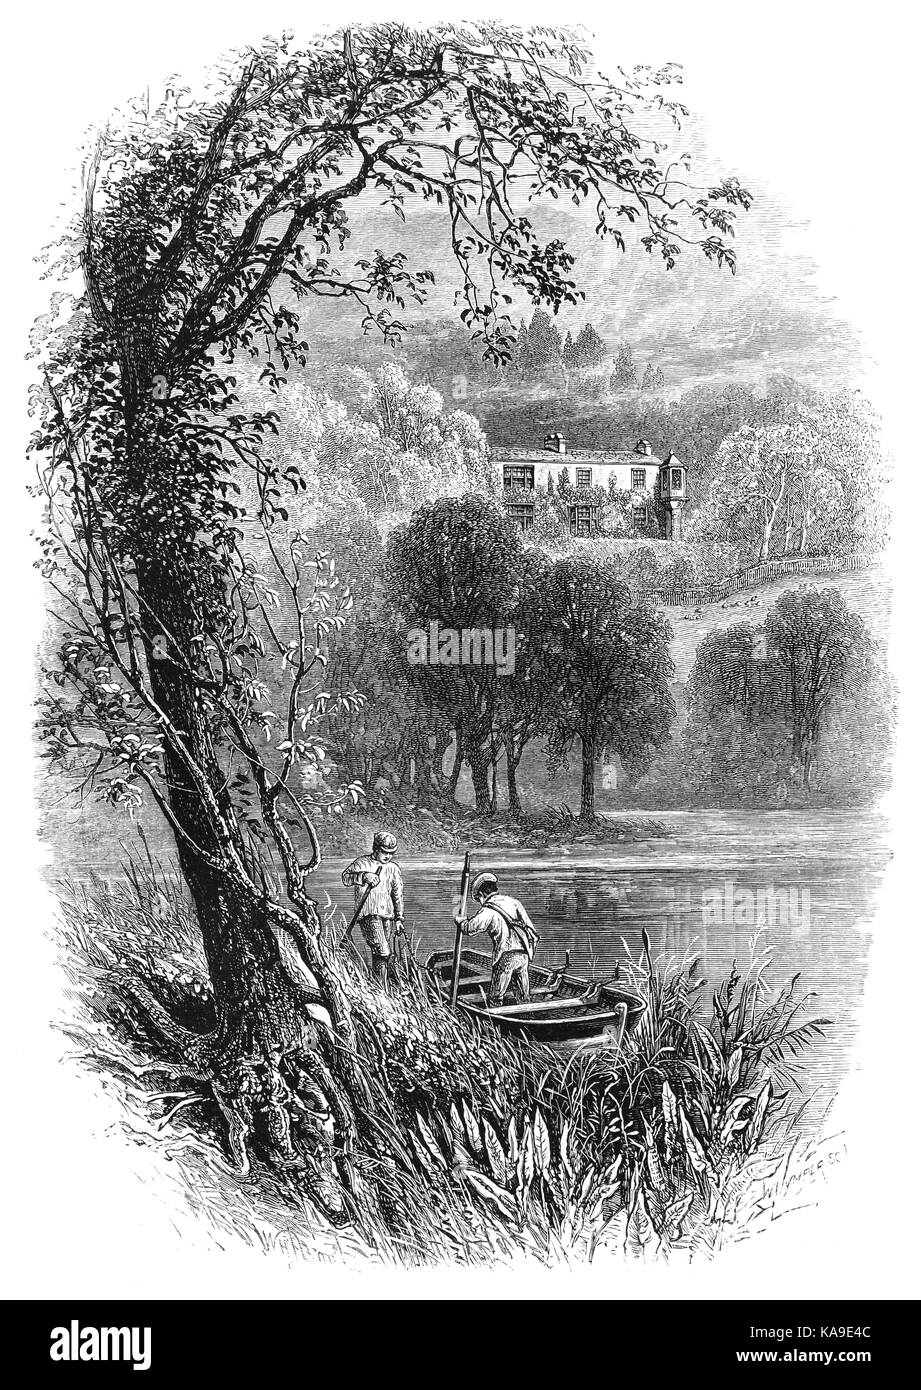 1870: Schiffer in Coniston Water, mit Brantwood, das Haus von John Ruskin, englischer Kunstkritiker der viktorianischen ära, sowie ein Mäzen, Verfasser der Stellungnahme, Aquarellist, einem prominenten sozialen Denker und Philanthrop. Der Lake District, Cumbria, England Stockfoto